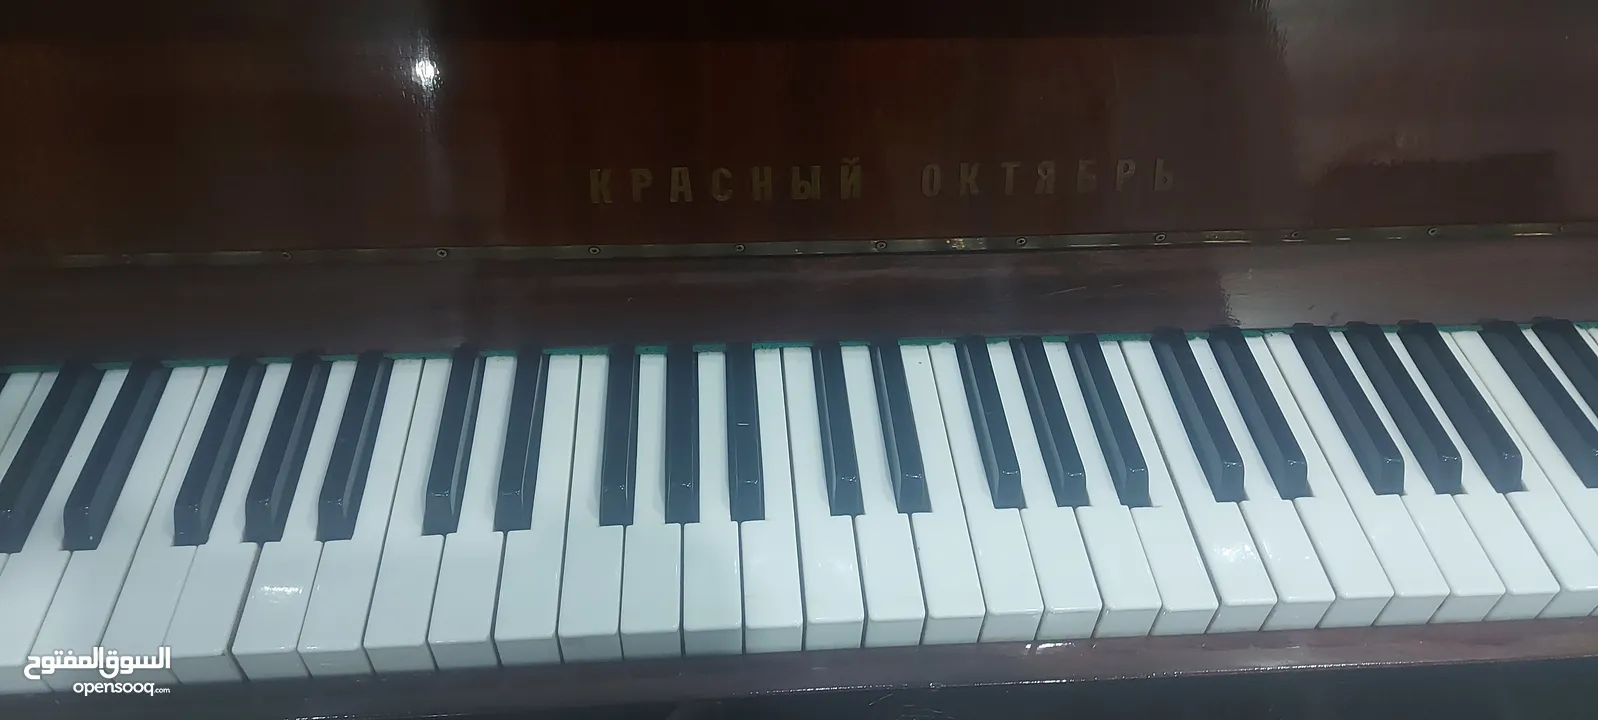 بيانو روسي خشبي